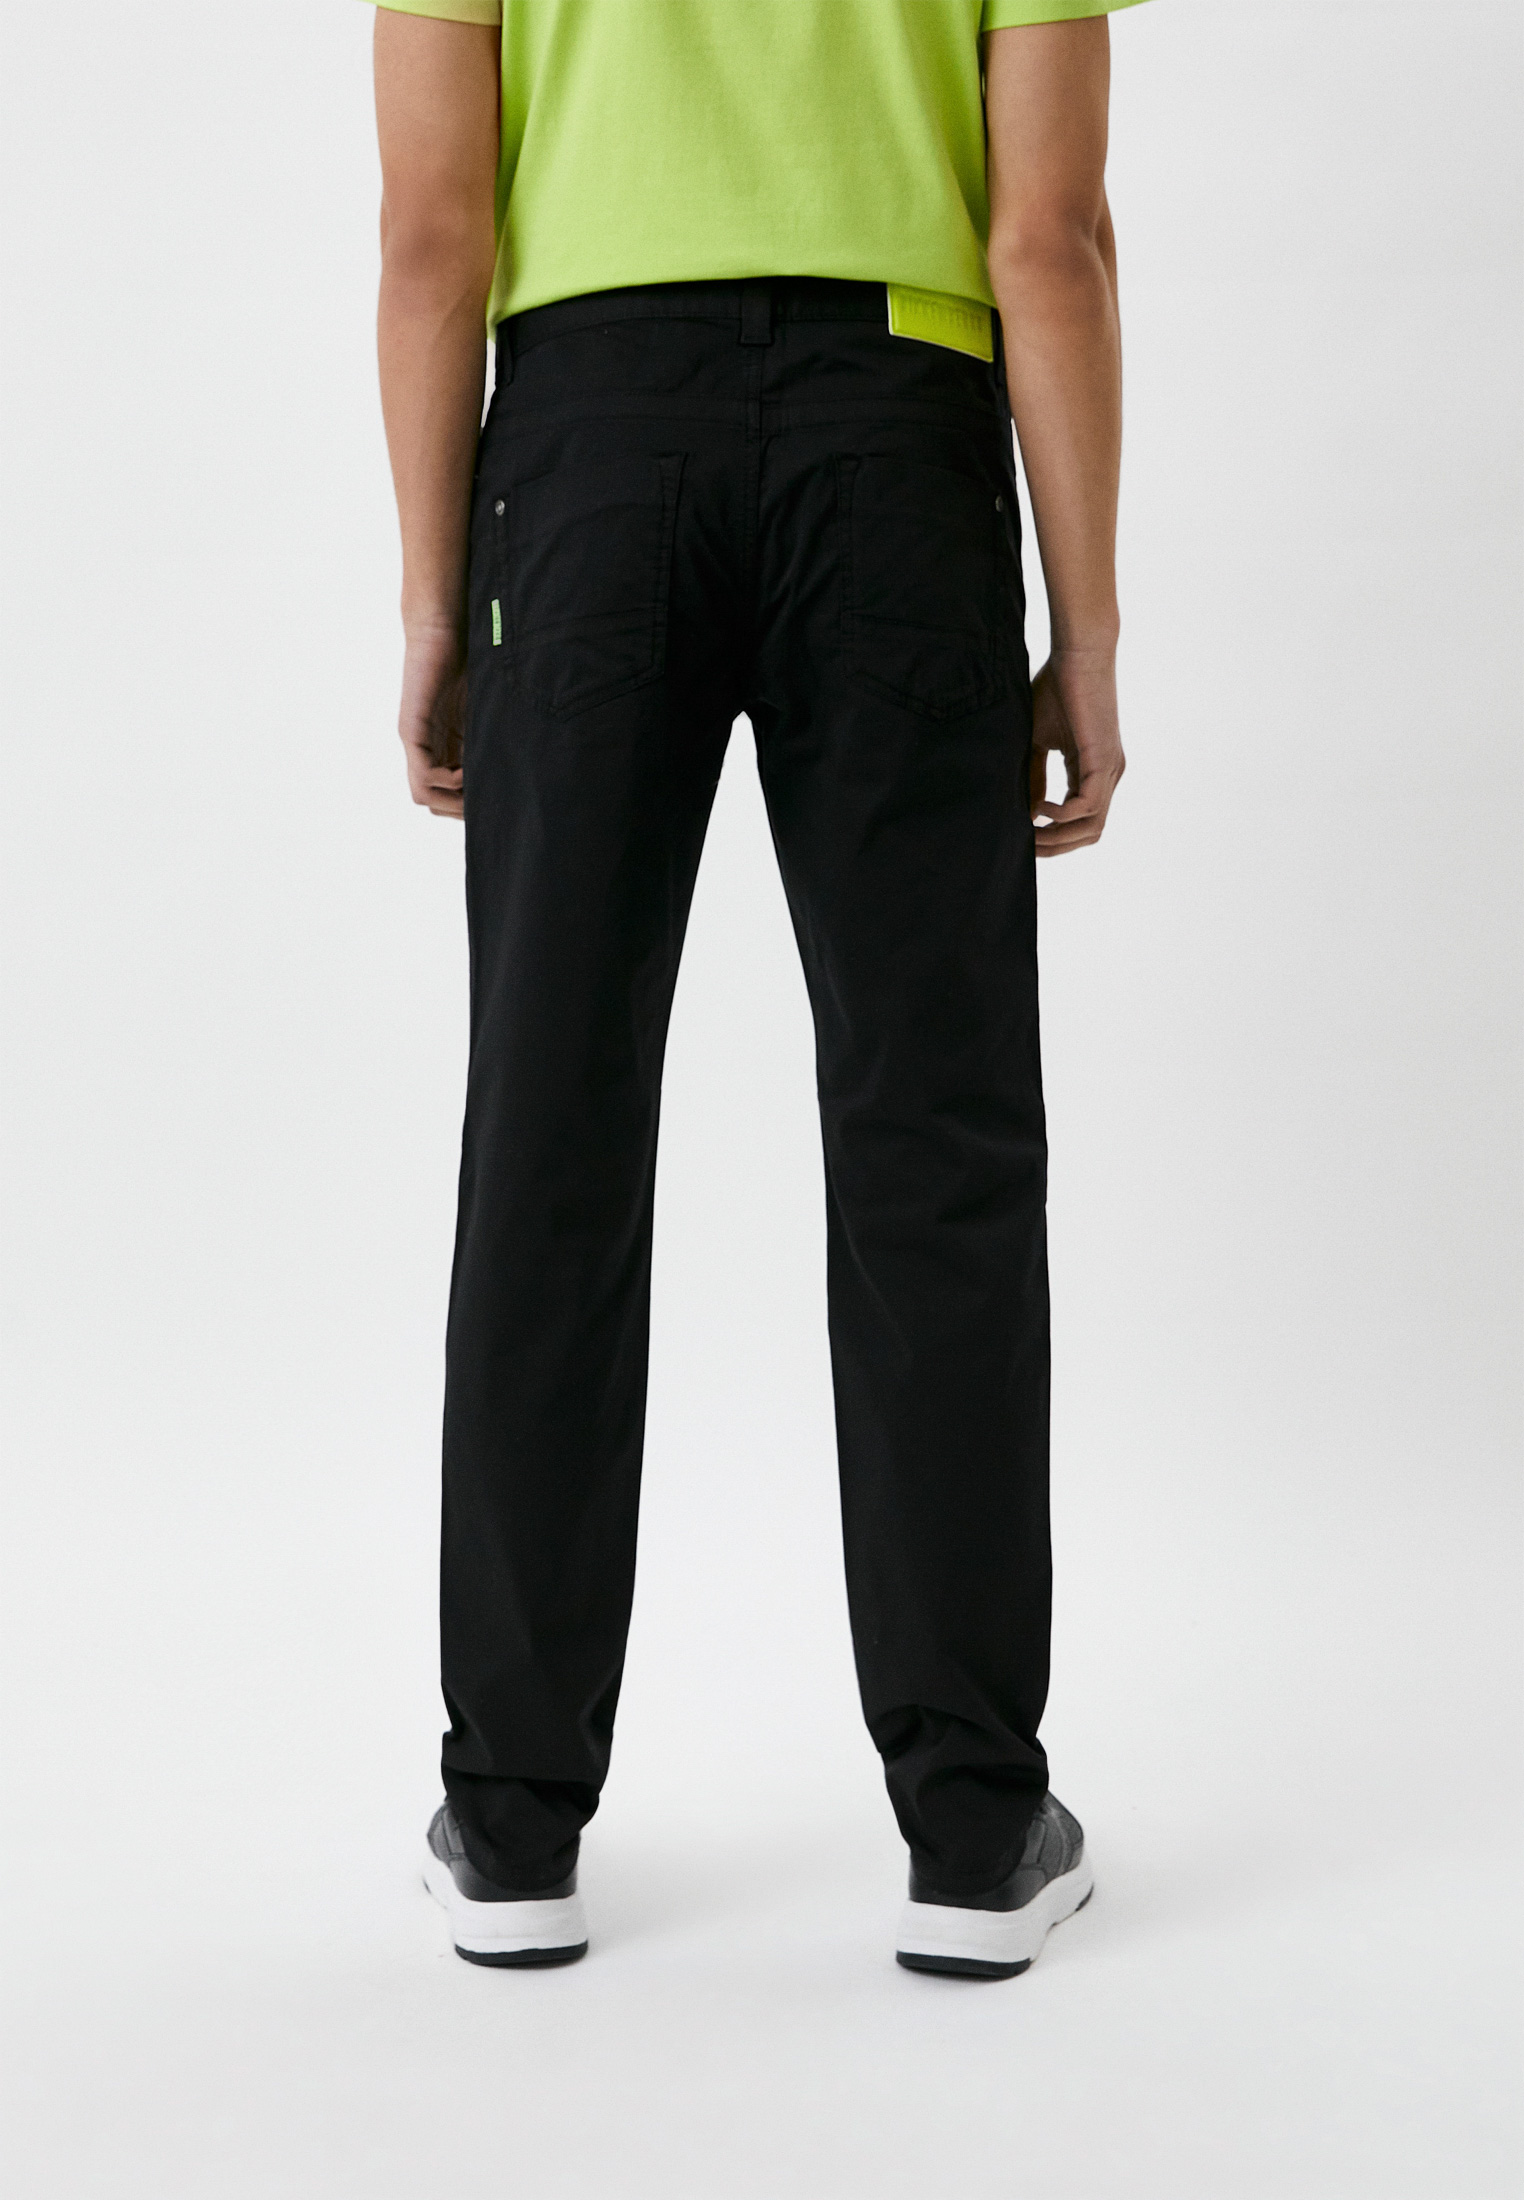 Мужские повседневные брюки Bikkembergs (Биккембергс) CQ10124S3519: изображение 3